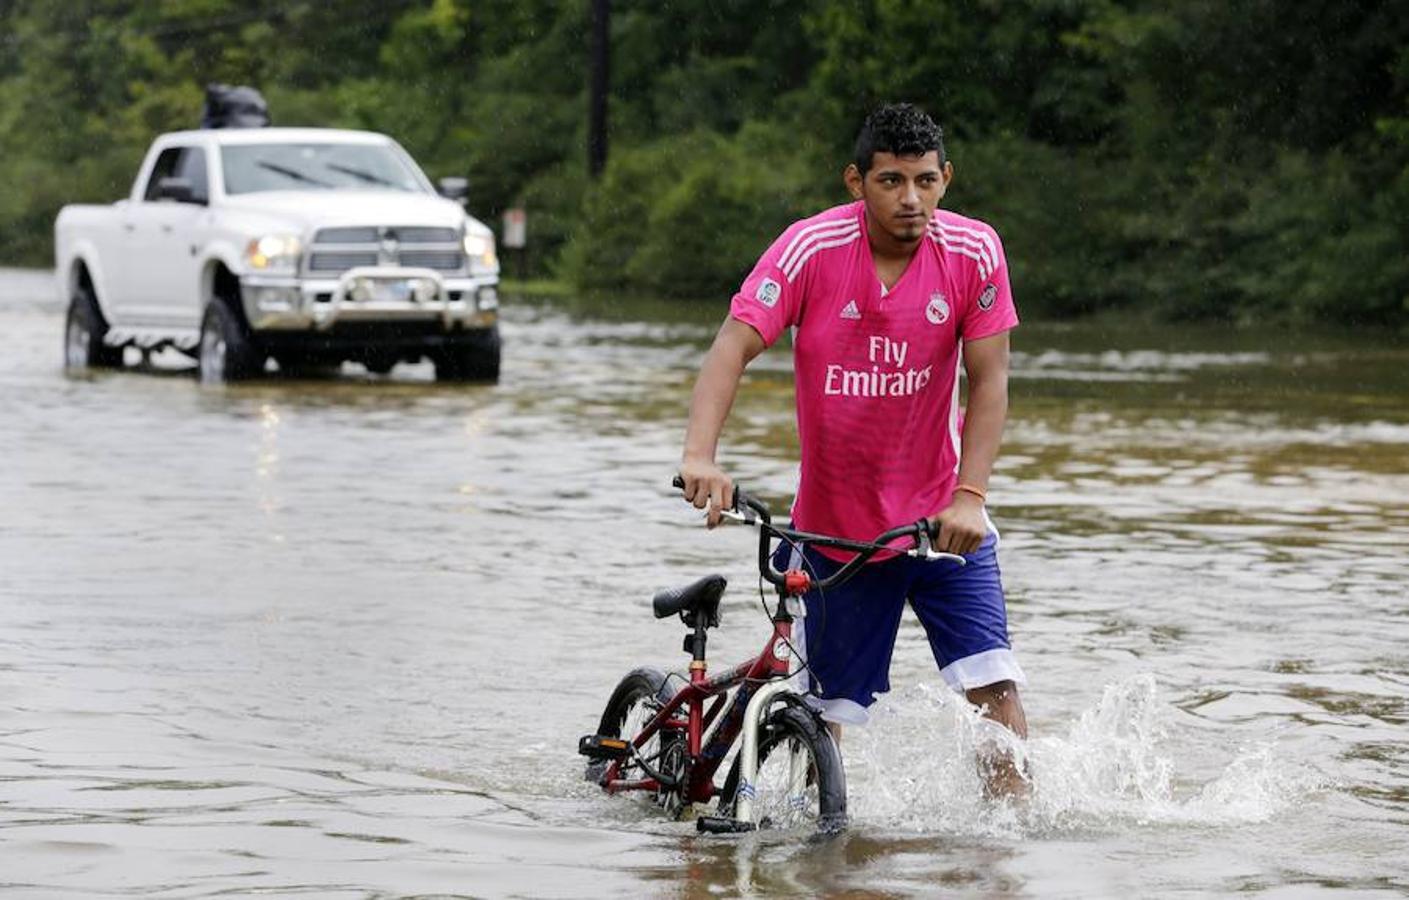 Un deportista caminando con su bicicleta en una carretera Texas 249.